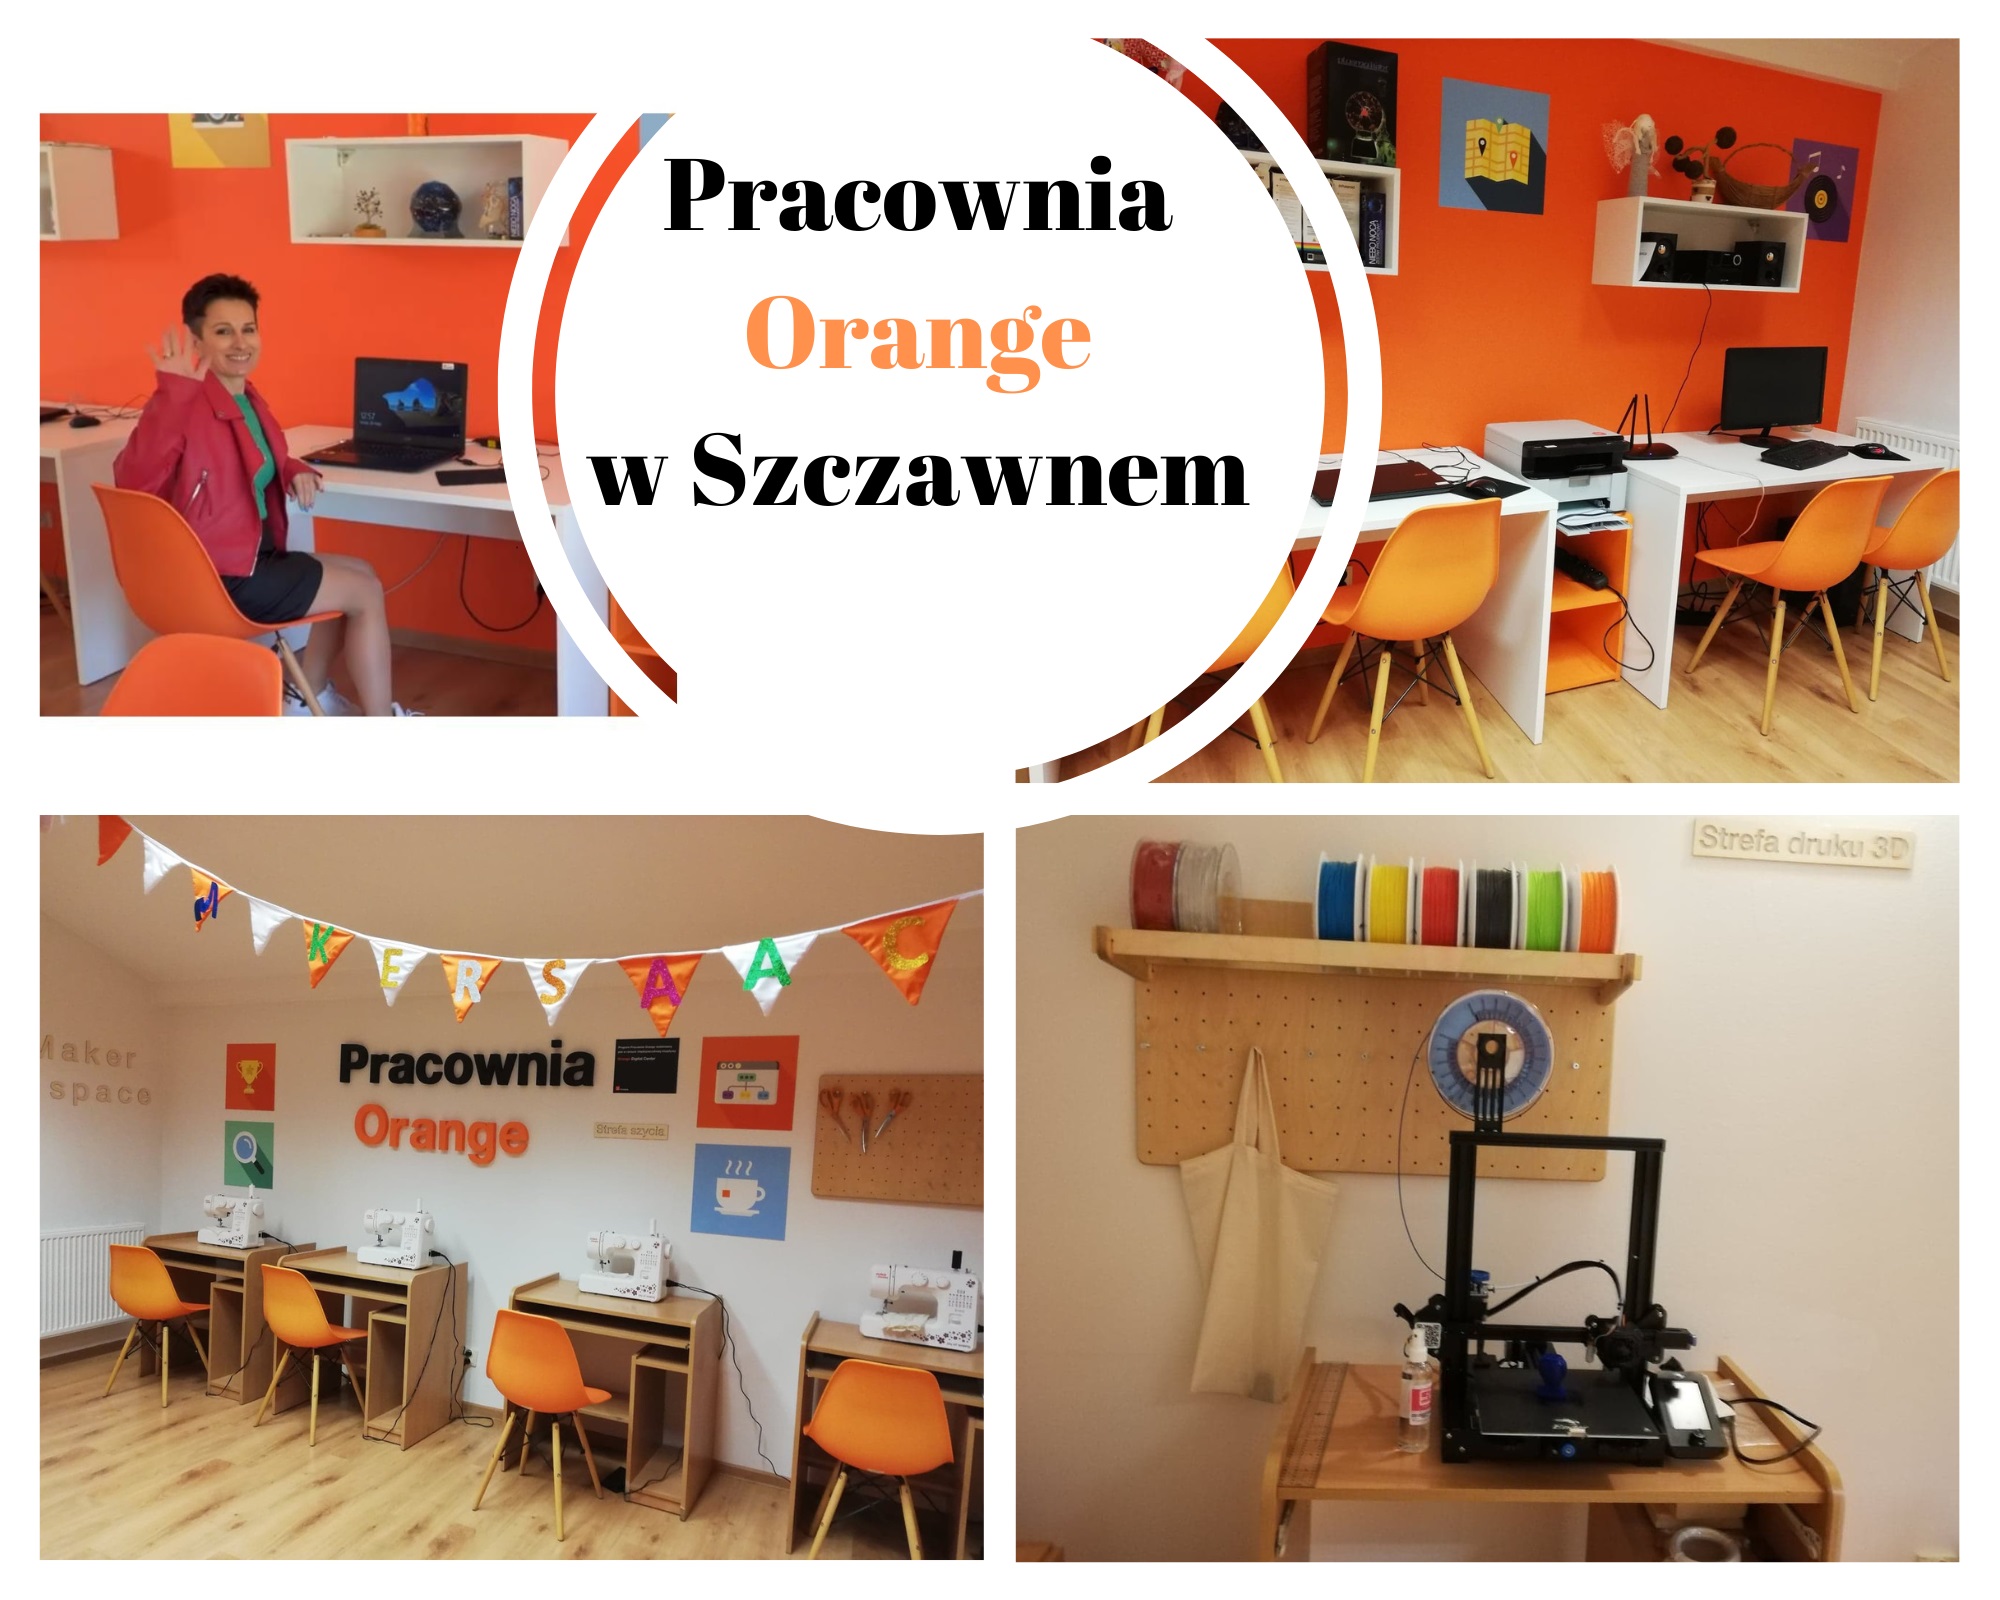 Zdjęcia przedstawiające wnętrze Pracowni Orange w Szczawnem oraz liderkę Pracowni.